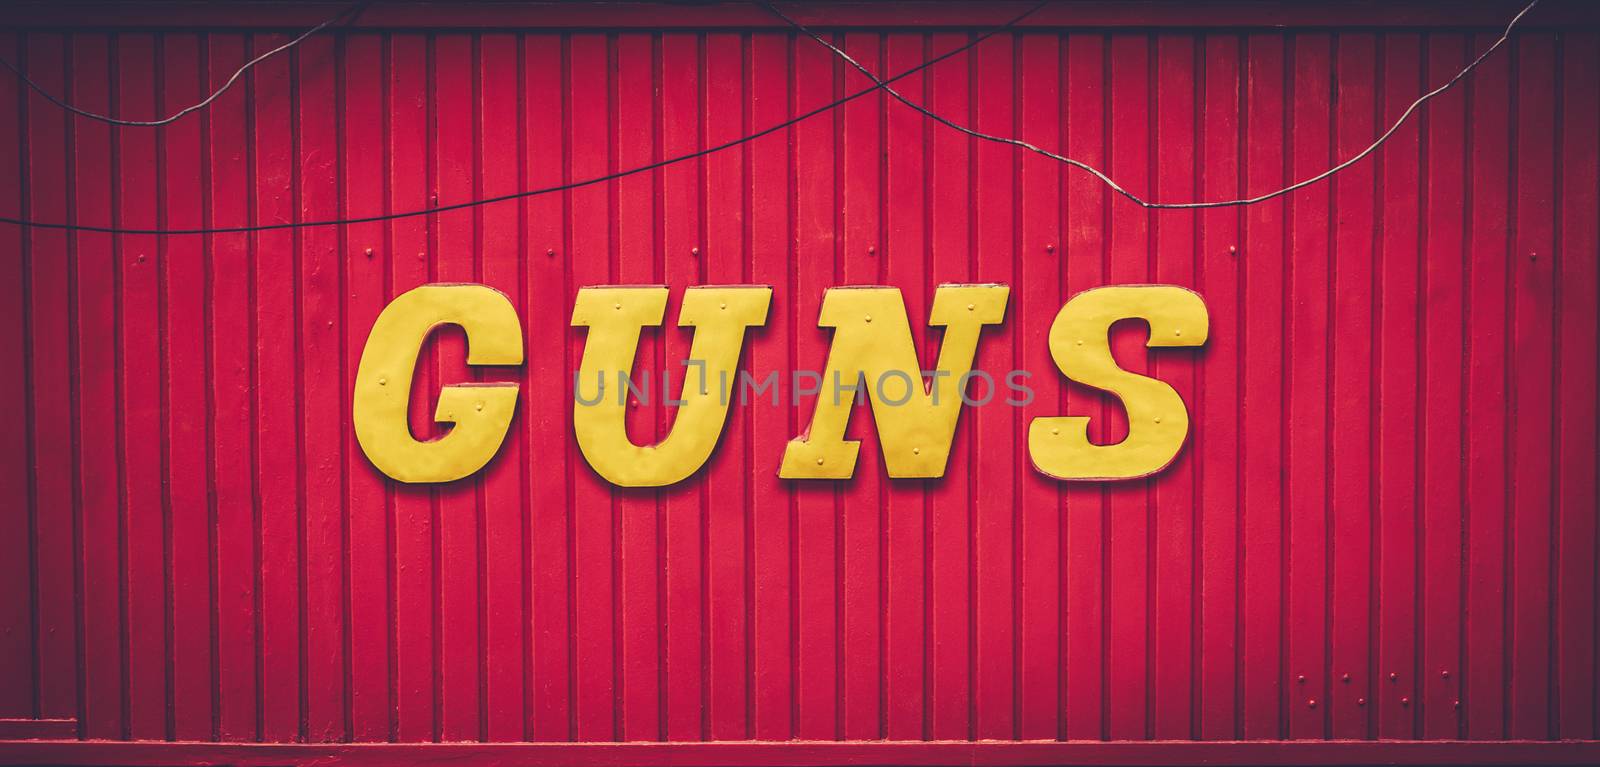 Retro Red Gun Store Sign by mrdoomits